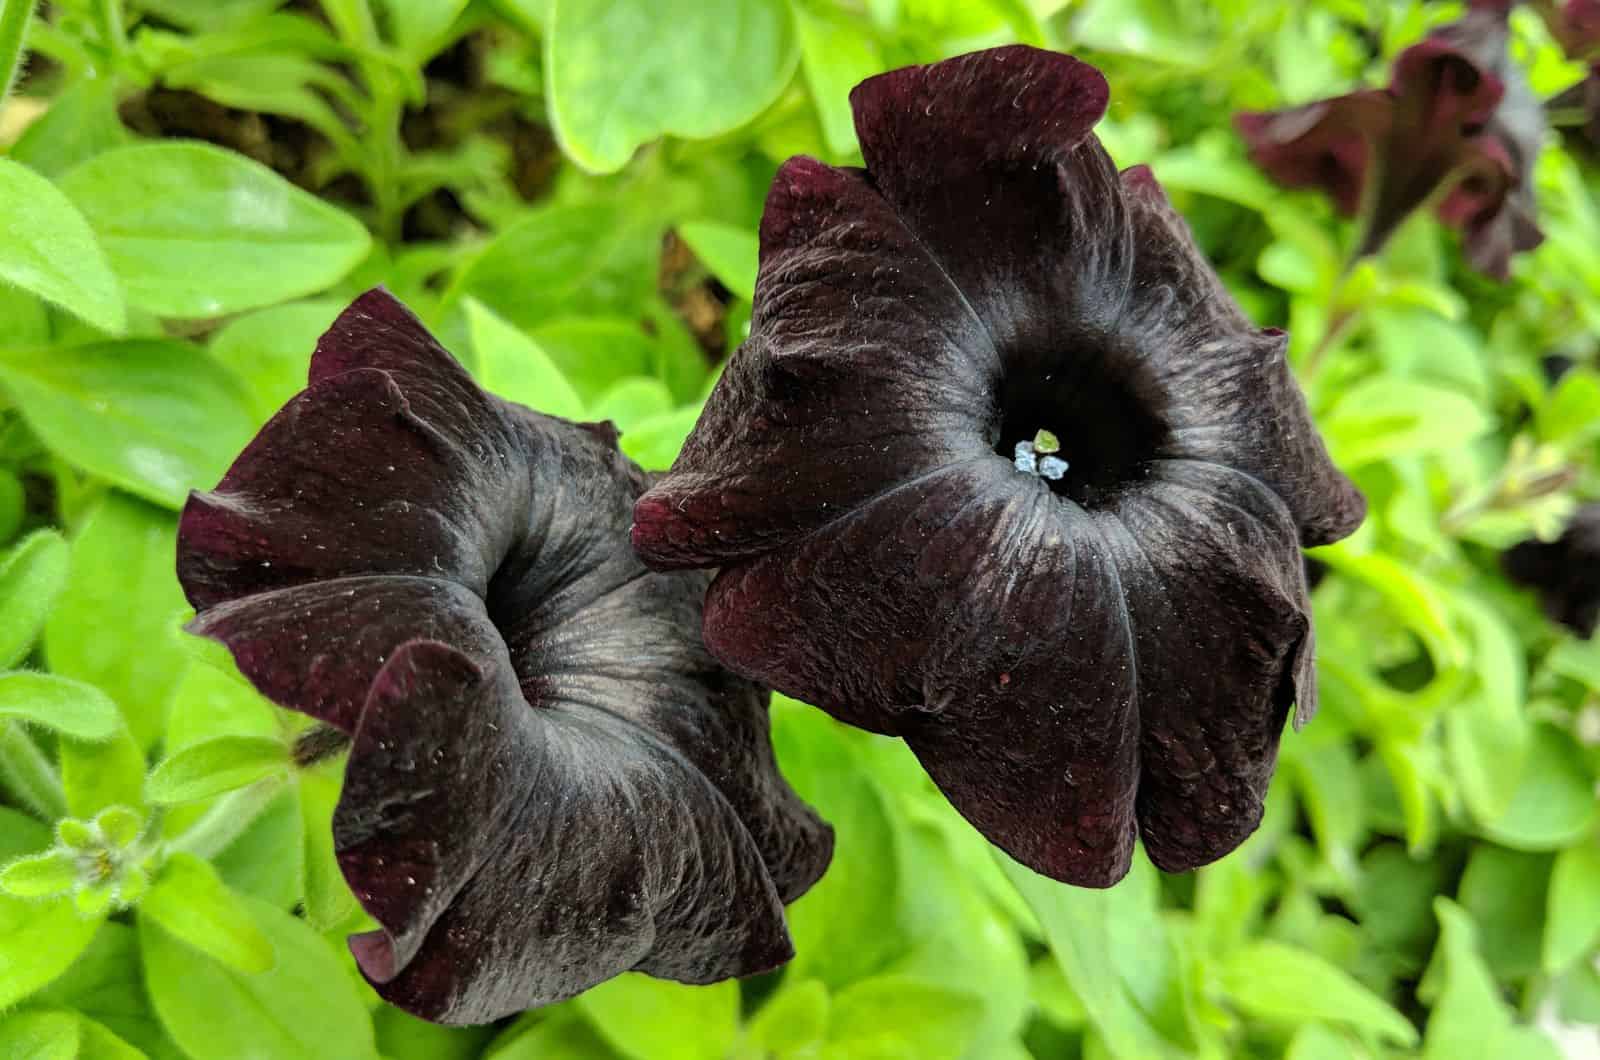 Black Magic Petunia blooming